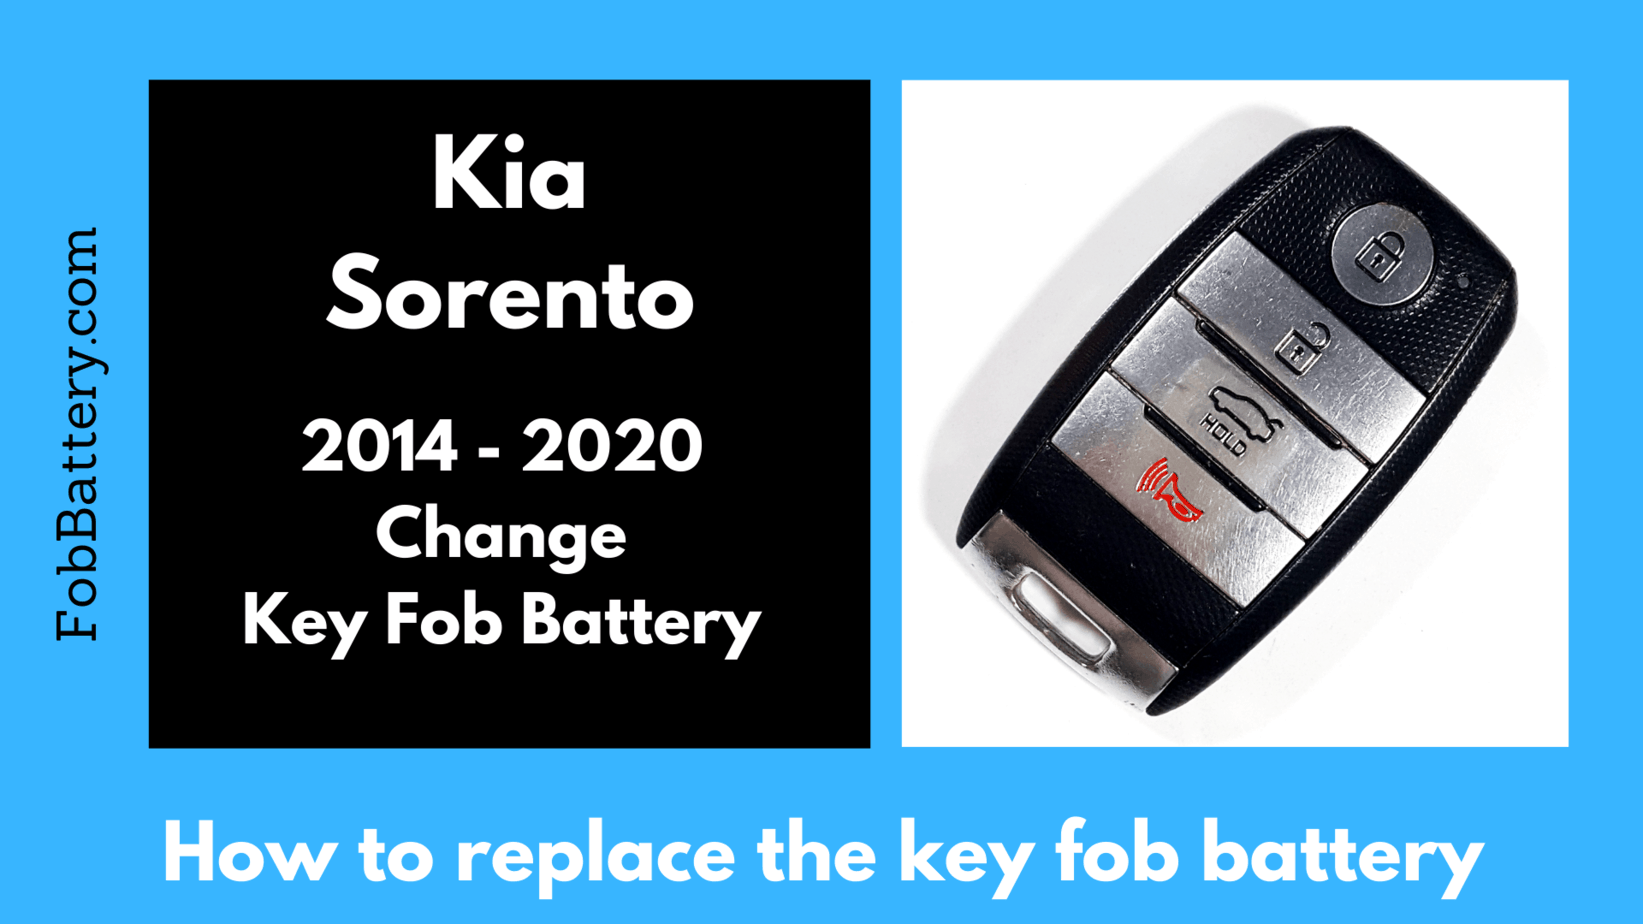 Kia Sorento key fob battery replacement